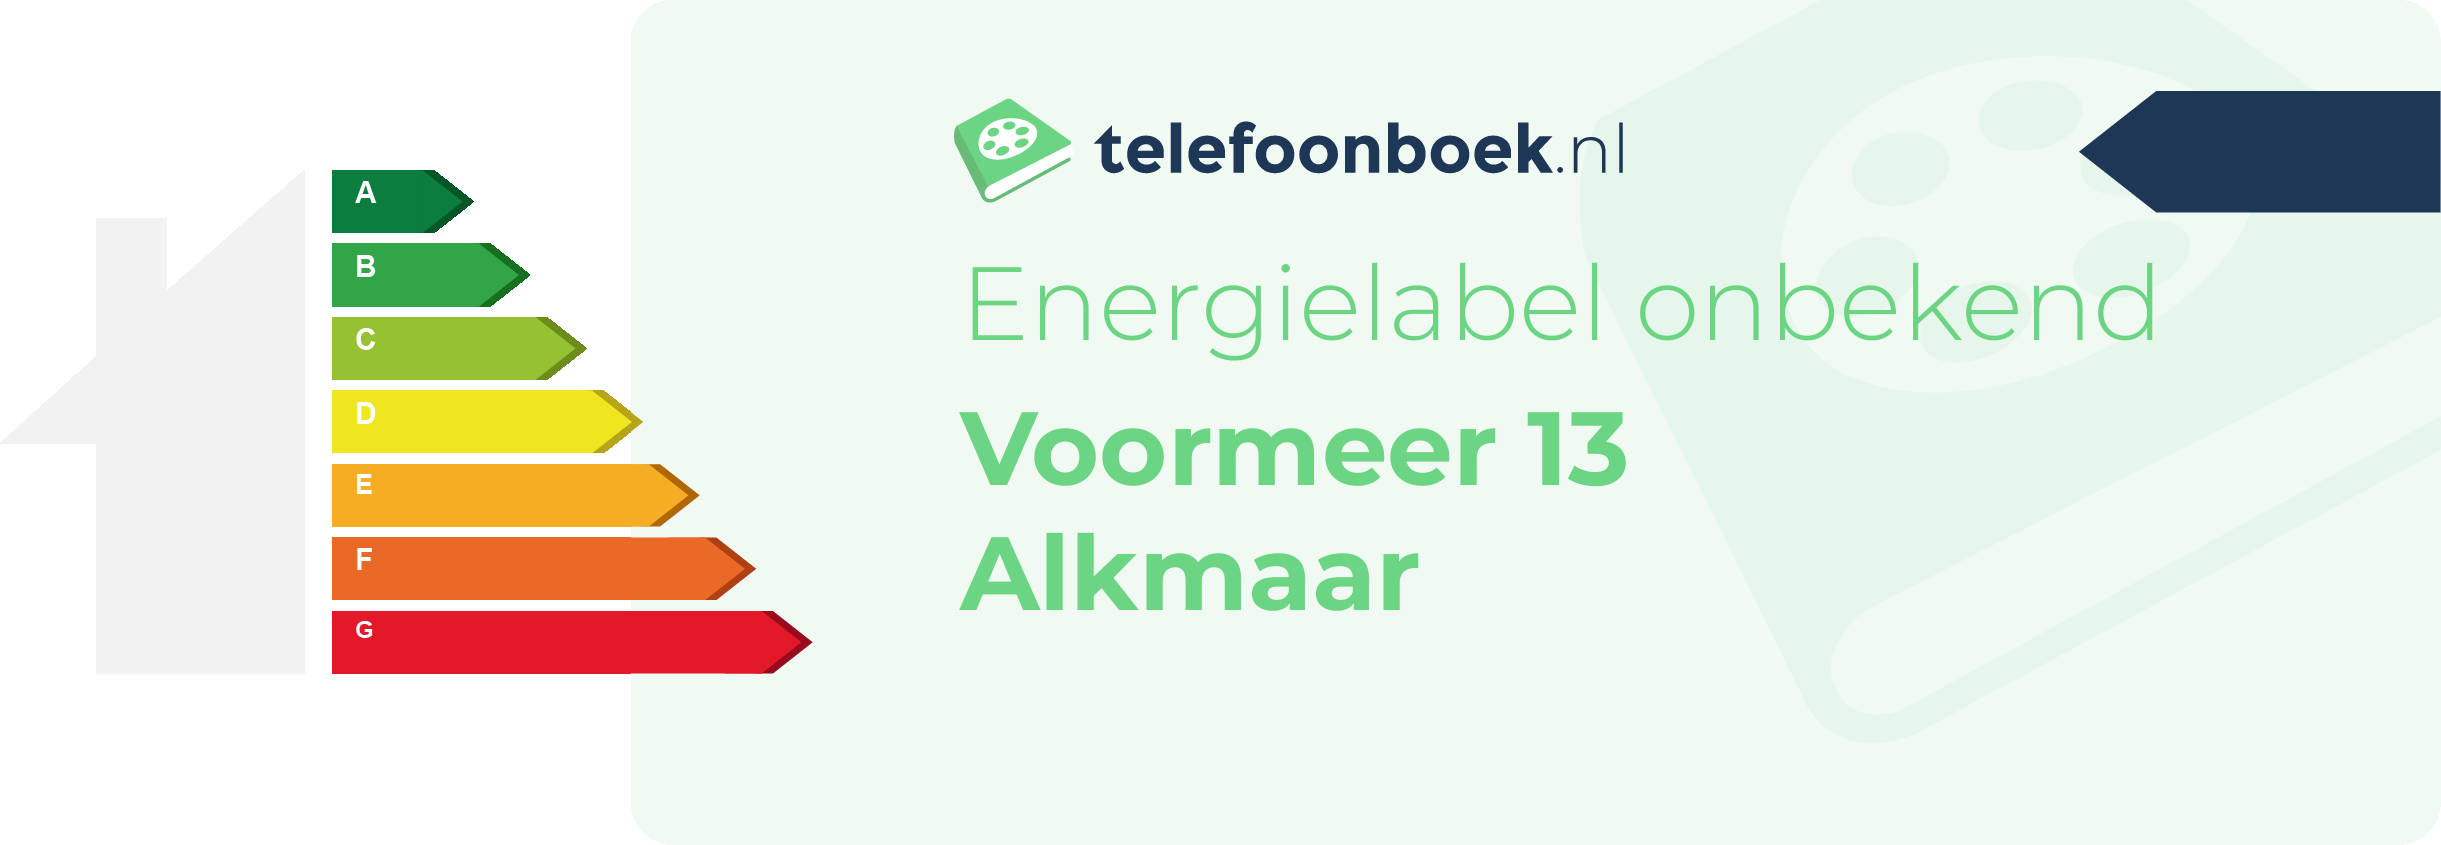 Energielabel Voormeer 13 Alkmaar